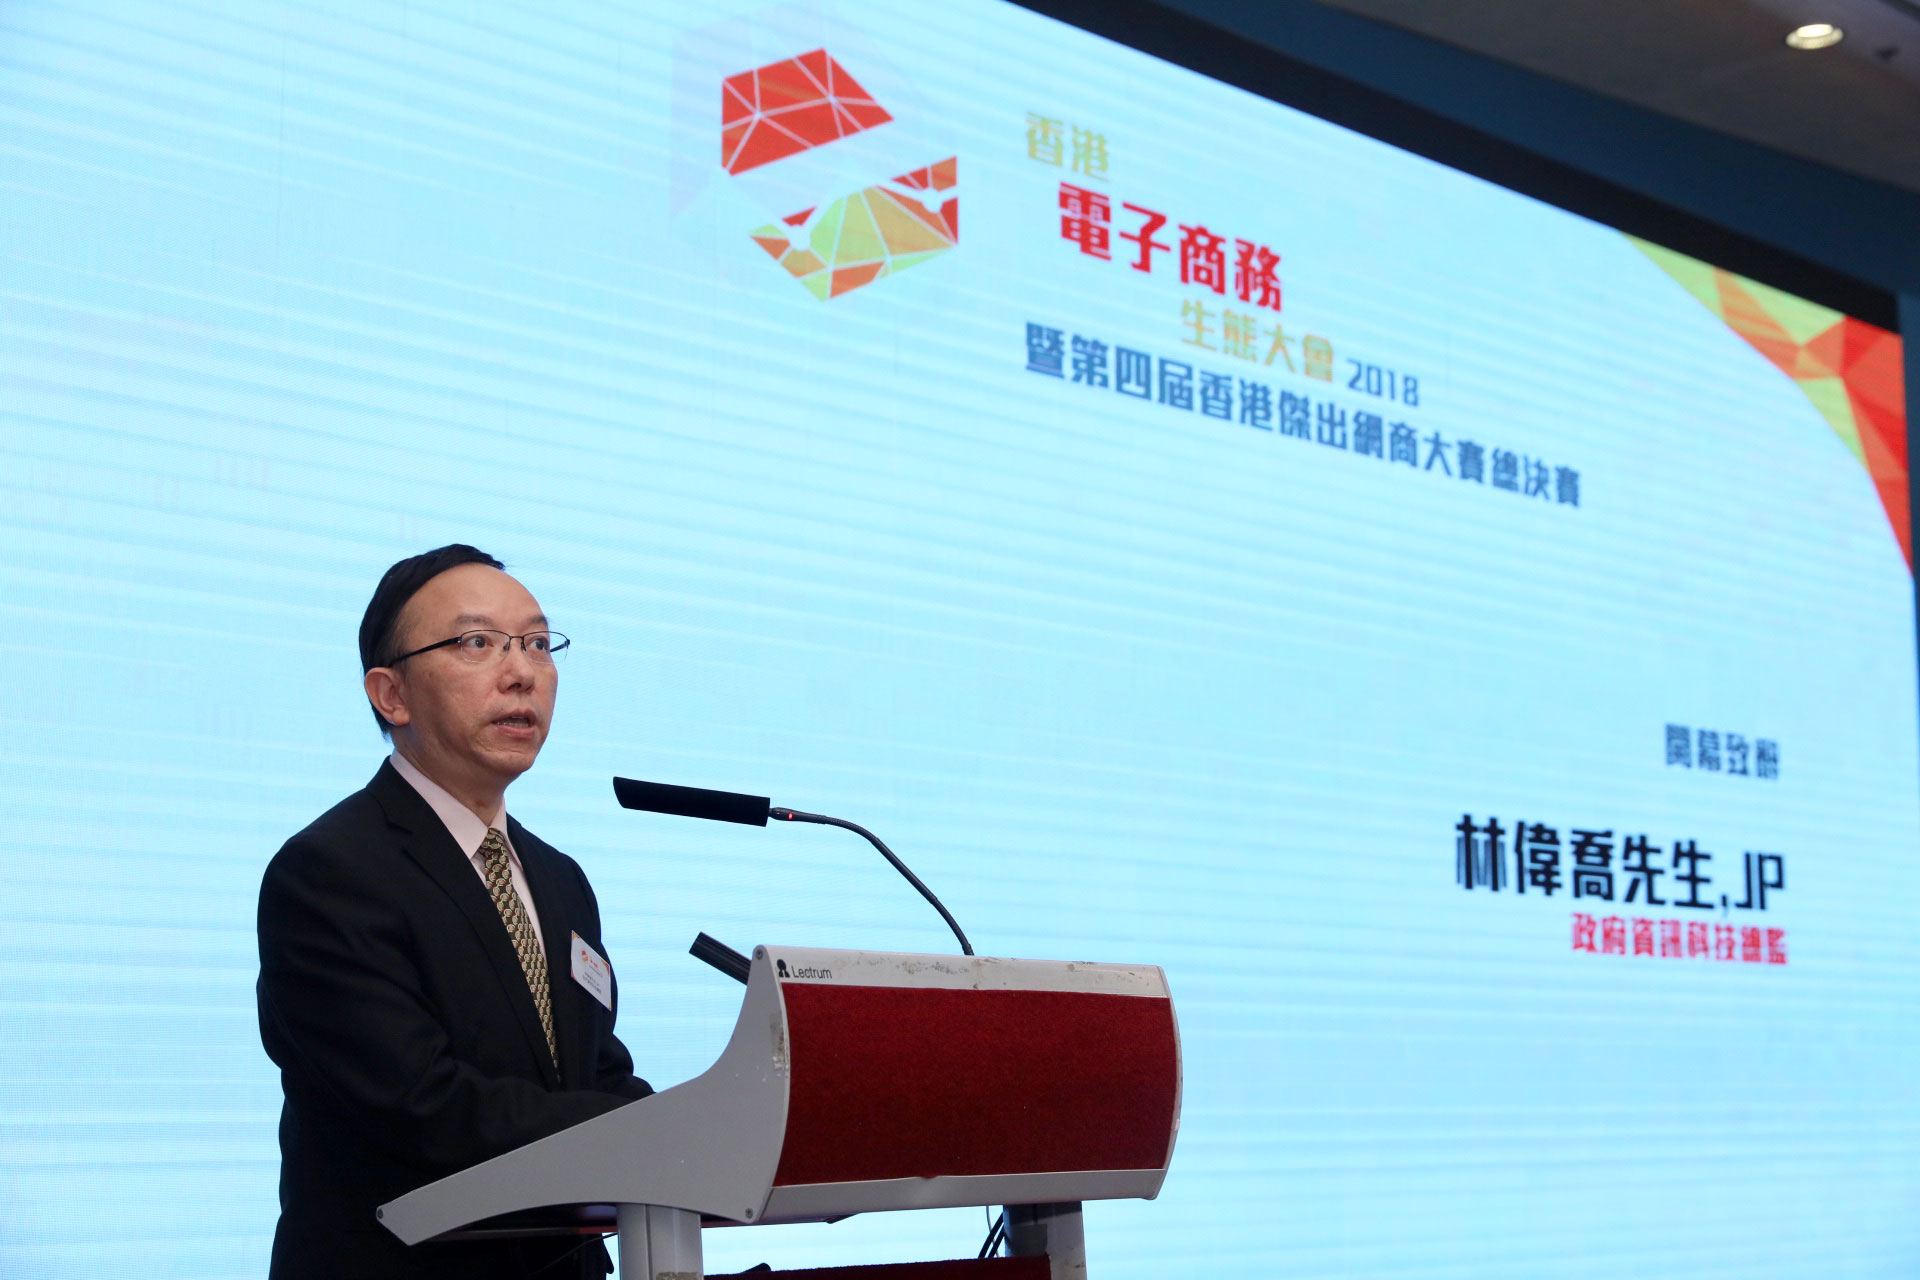 政府資訊科技總監林偉喬先生於「香港電子商務生態大會2018暨第四屆香港傑出網商大賽」上致辭